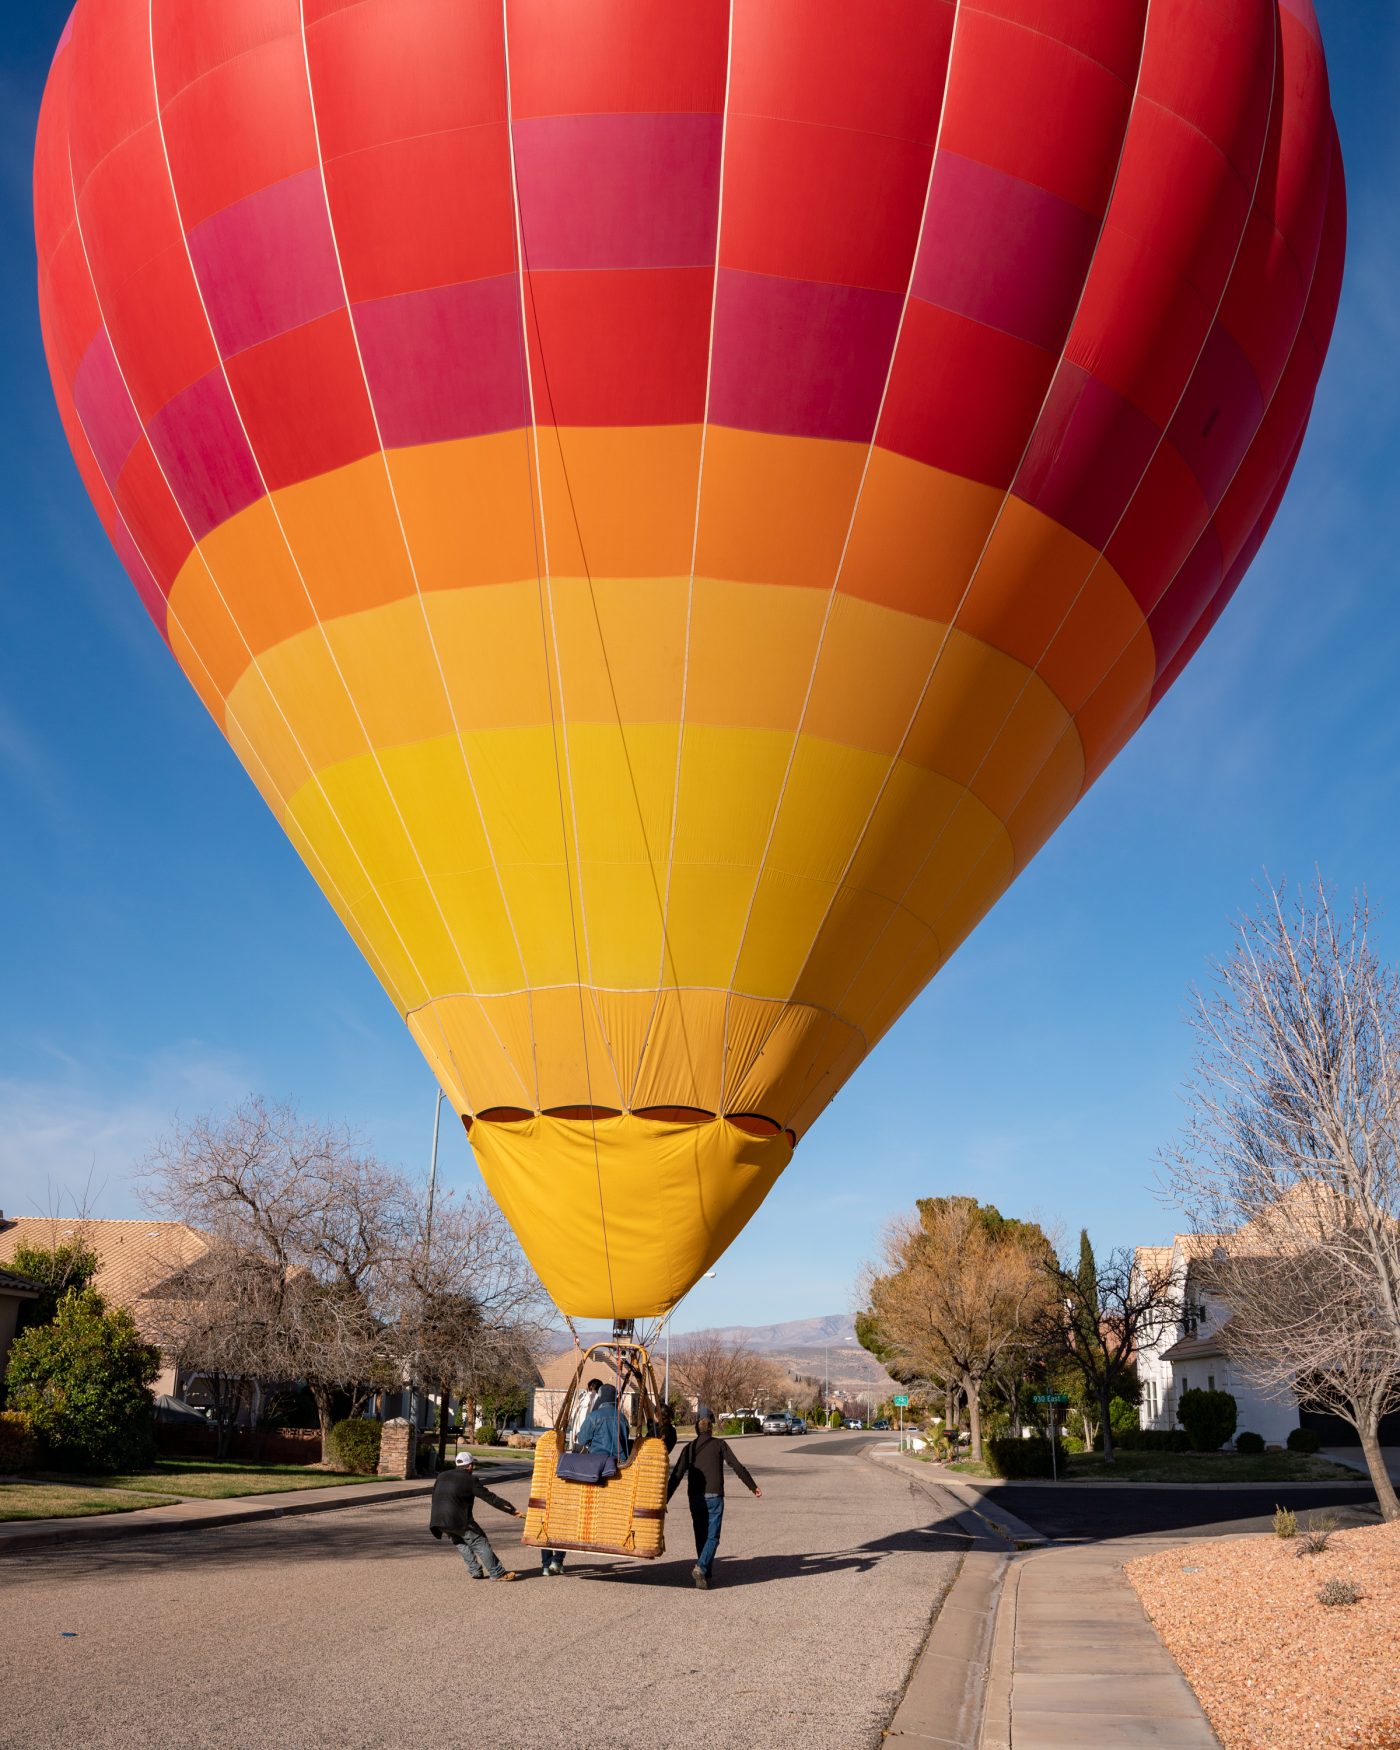 Palledin Hot Air Balloon Ride - St. George, Utah